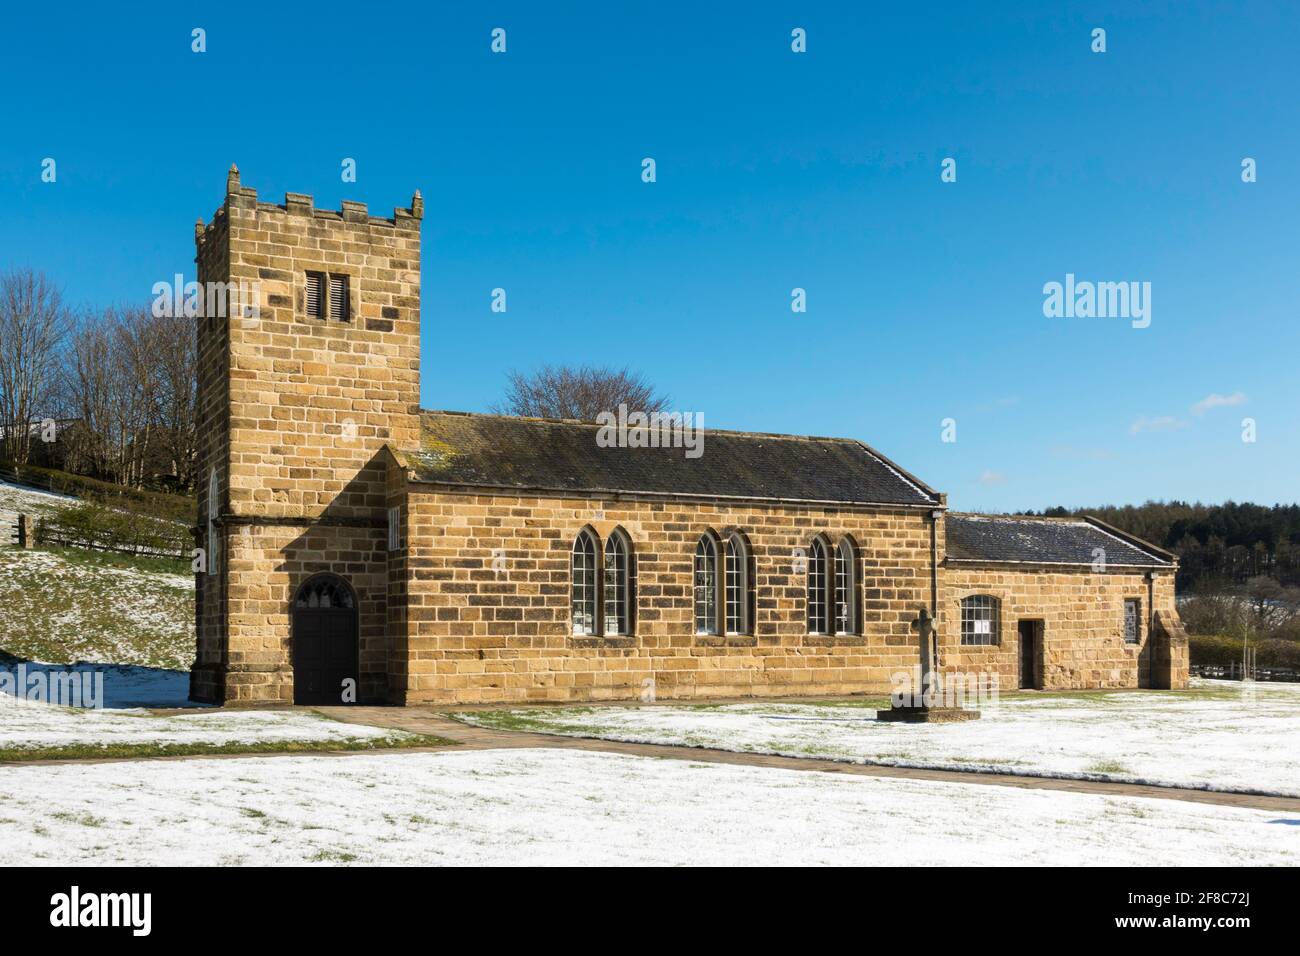 Winterliche Ansicht der Kirche von Eston St Hilda, rekonstruiert im Museum von Beamish in Co. Durham, England, Großbritannien Stockfoto